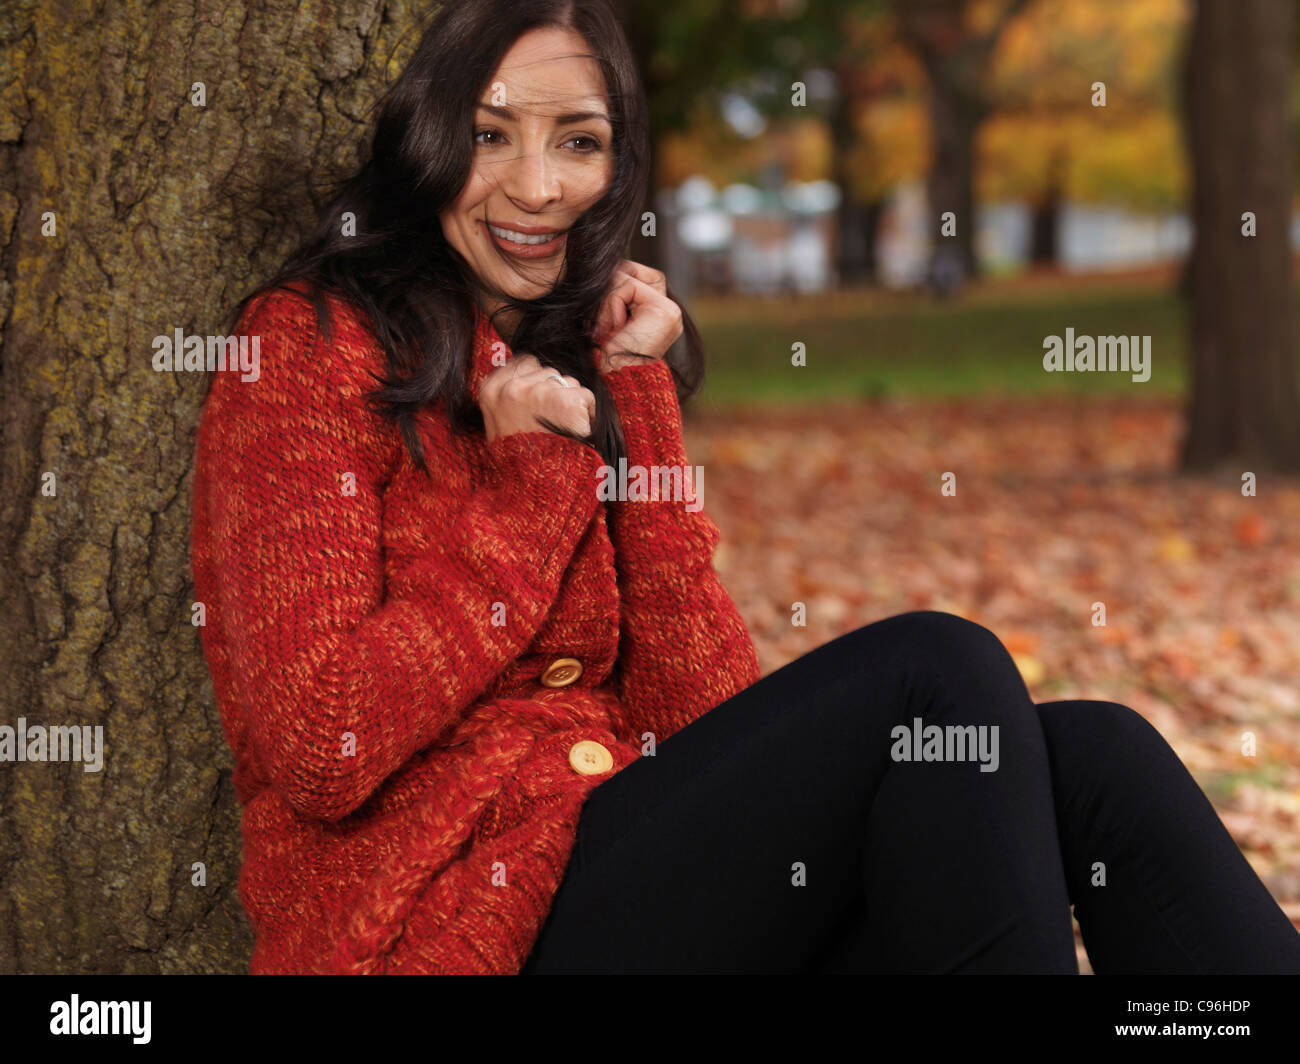 Beautiful smiling woman cuddling up dans un chandail rouge. Couvrant de vent dans l'automne. Banque D'Images